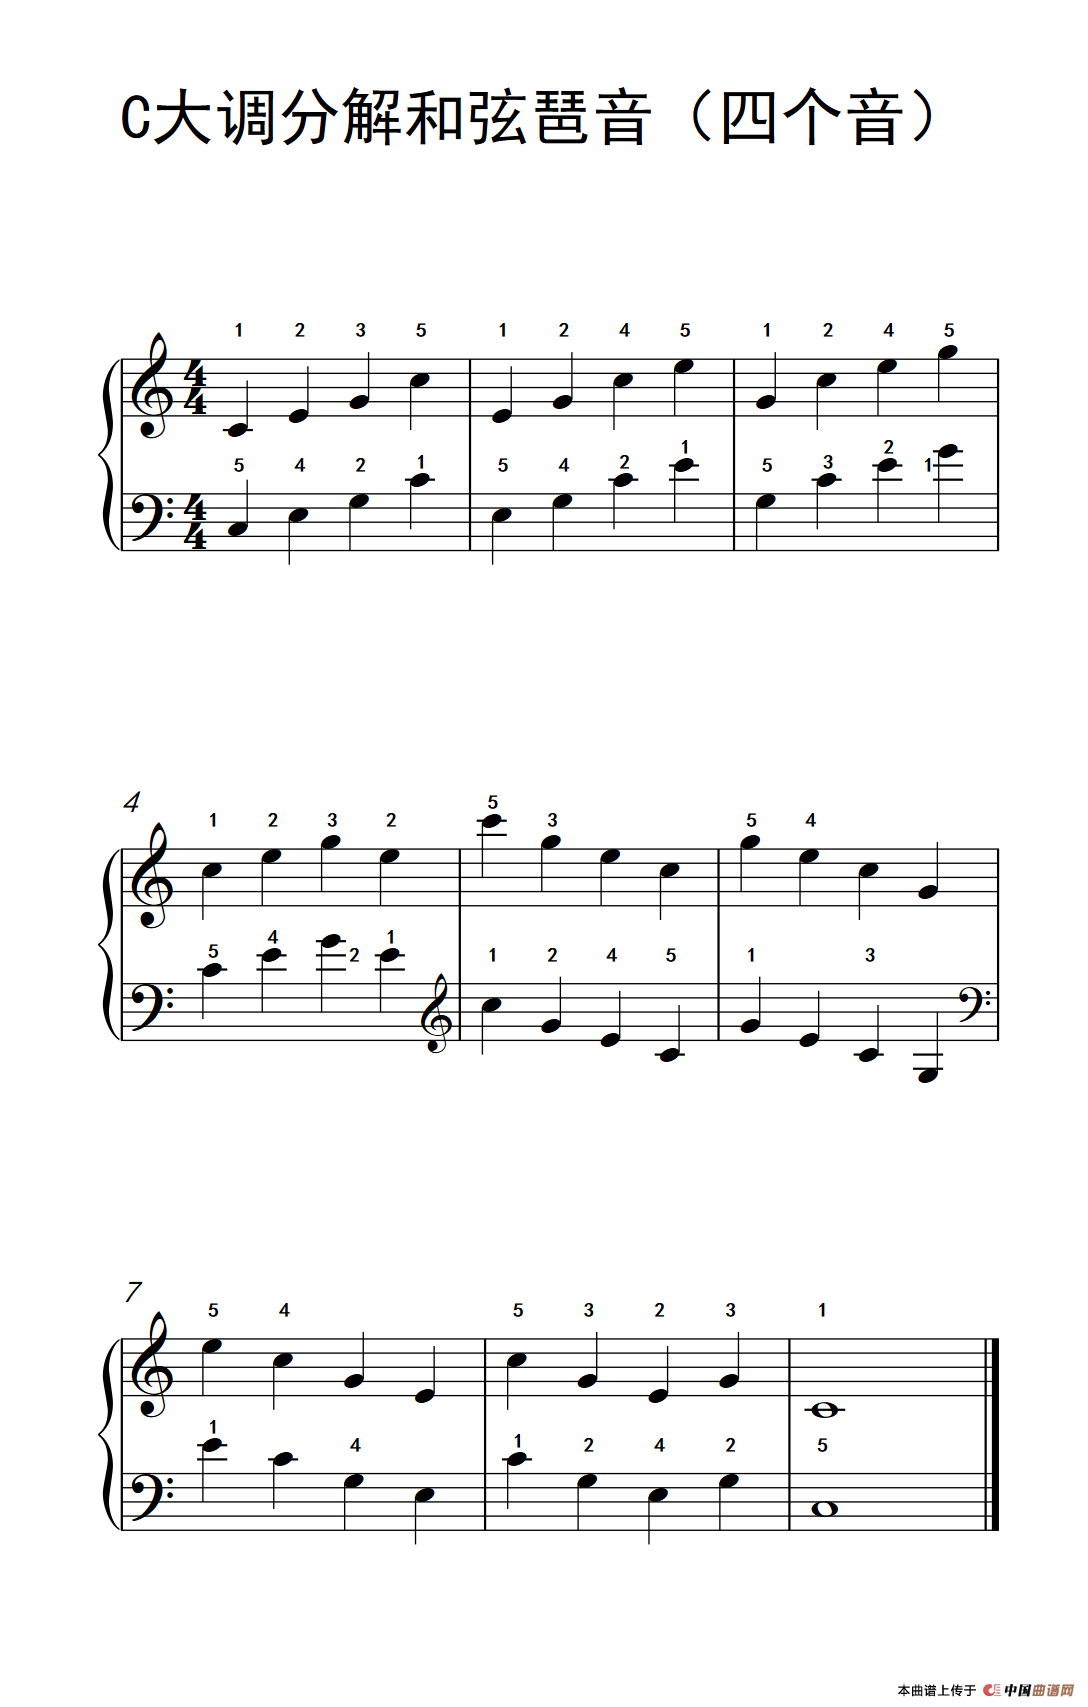 C大调分解和弦琶音（四个音）（儿童钢琴练习曲